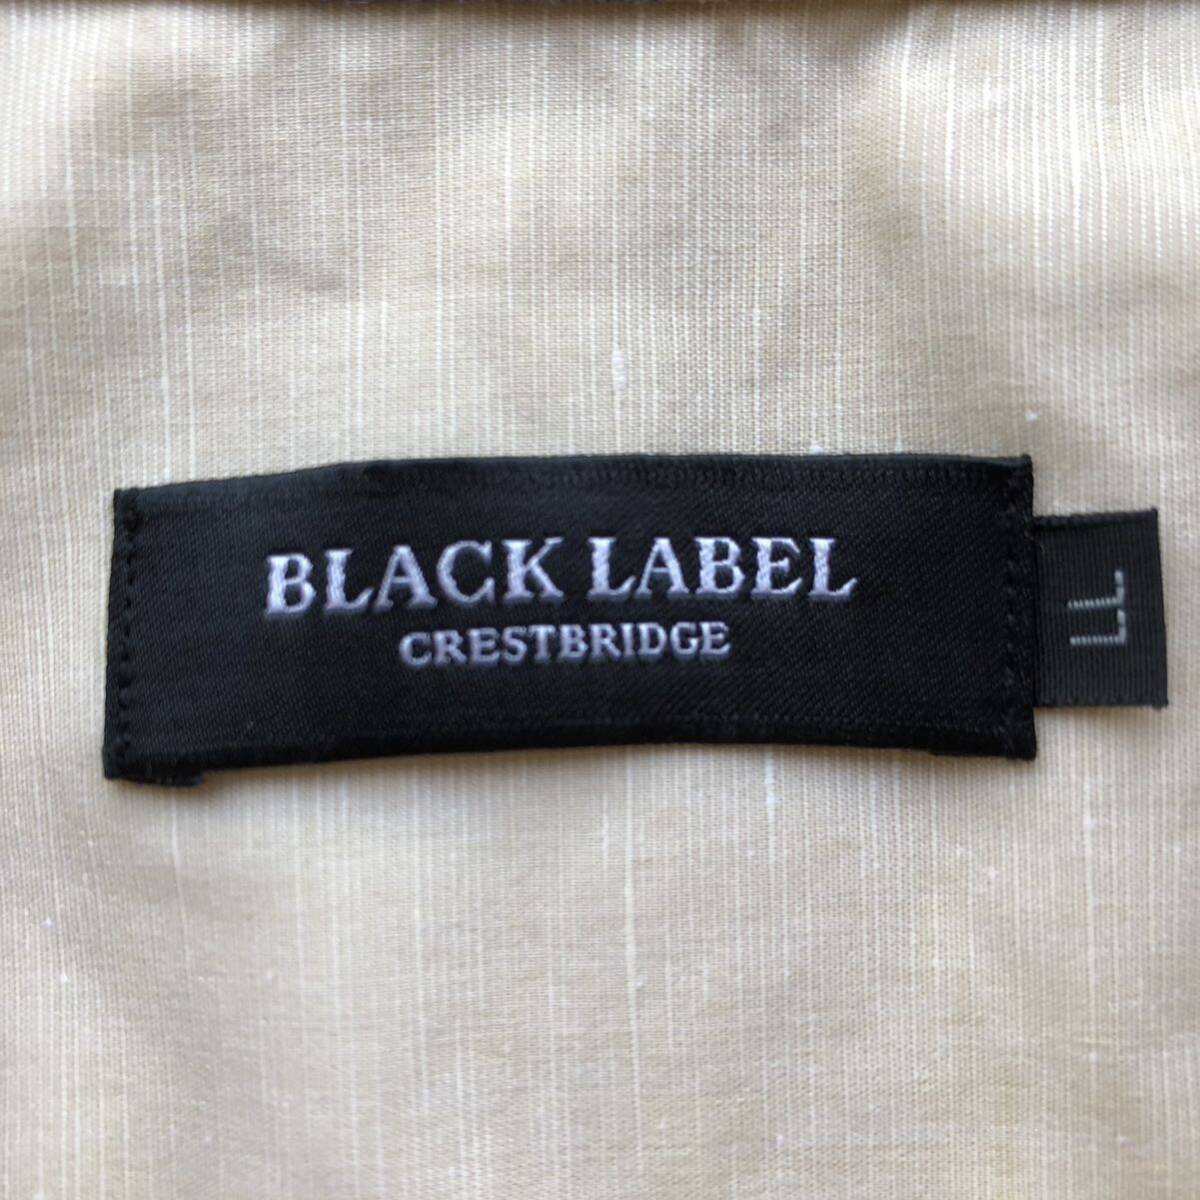  превосходный товар /LL/XL/linen. лен * Black Label k rest Bridge BLACKLABEL CRESTBRIDGE рубашка с длинным рукавом проверка эмблема вышивка Logo бежевый 